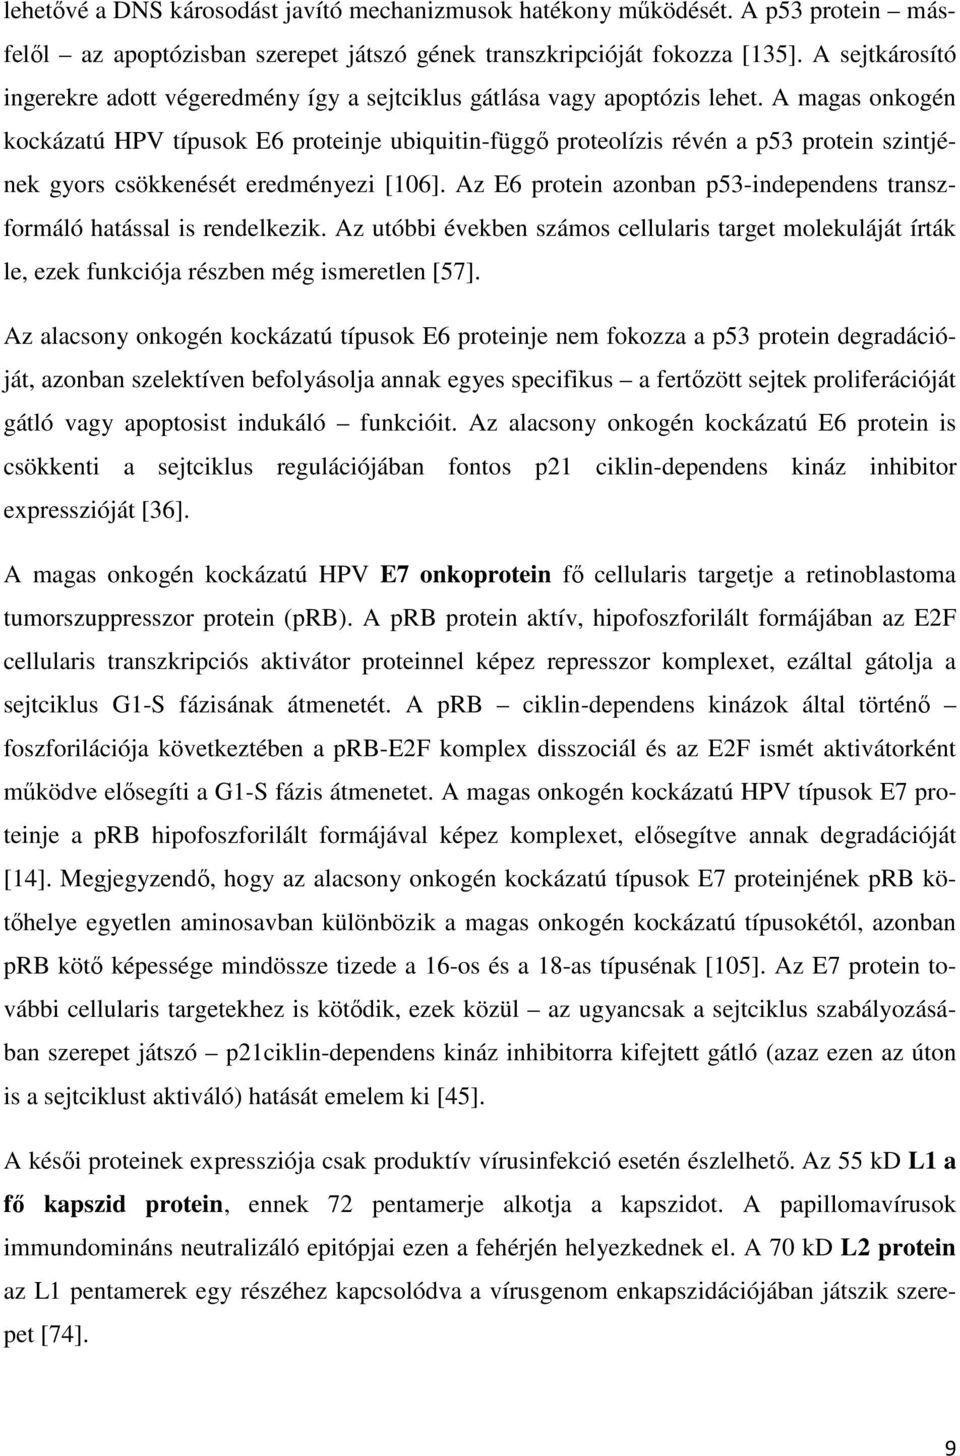 Magyar Dermatológiai Társulat On-line - Diffúz papillomatosis